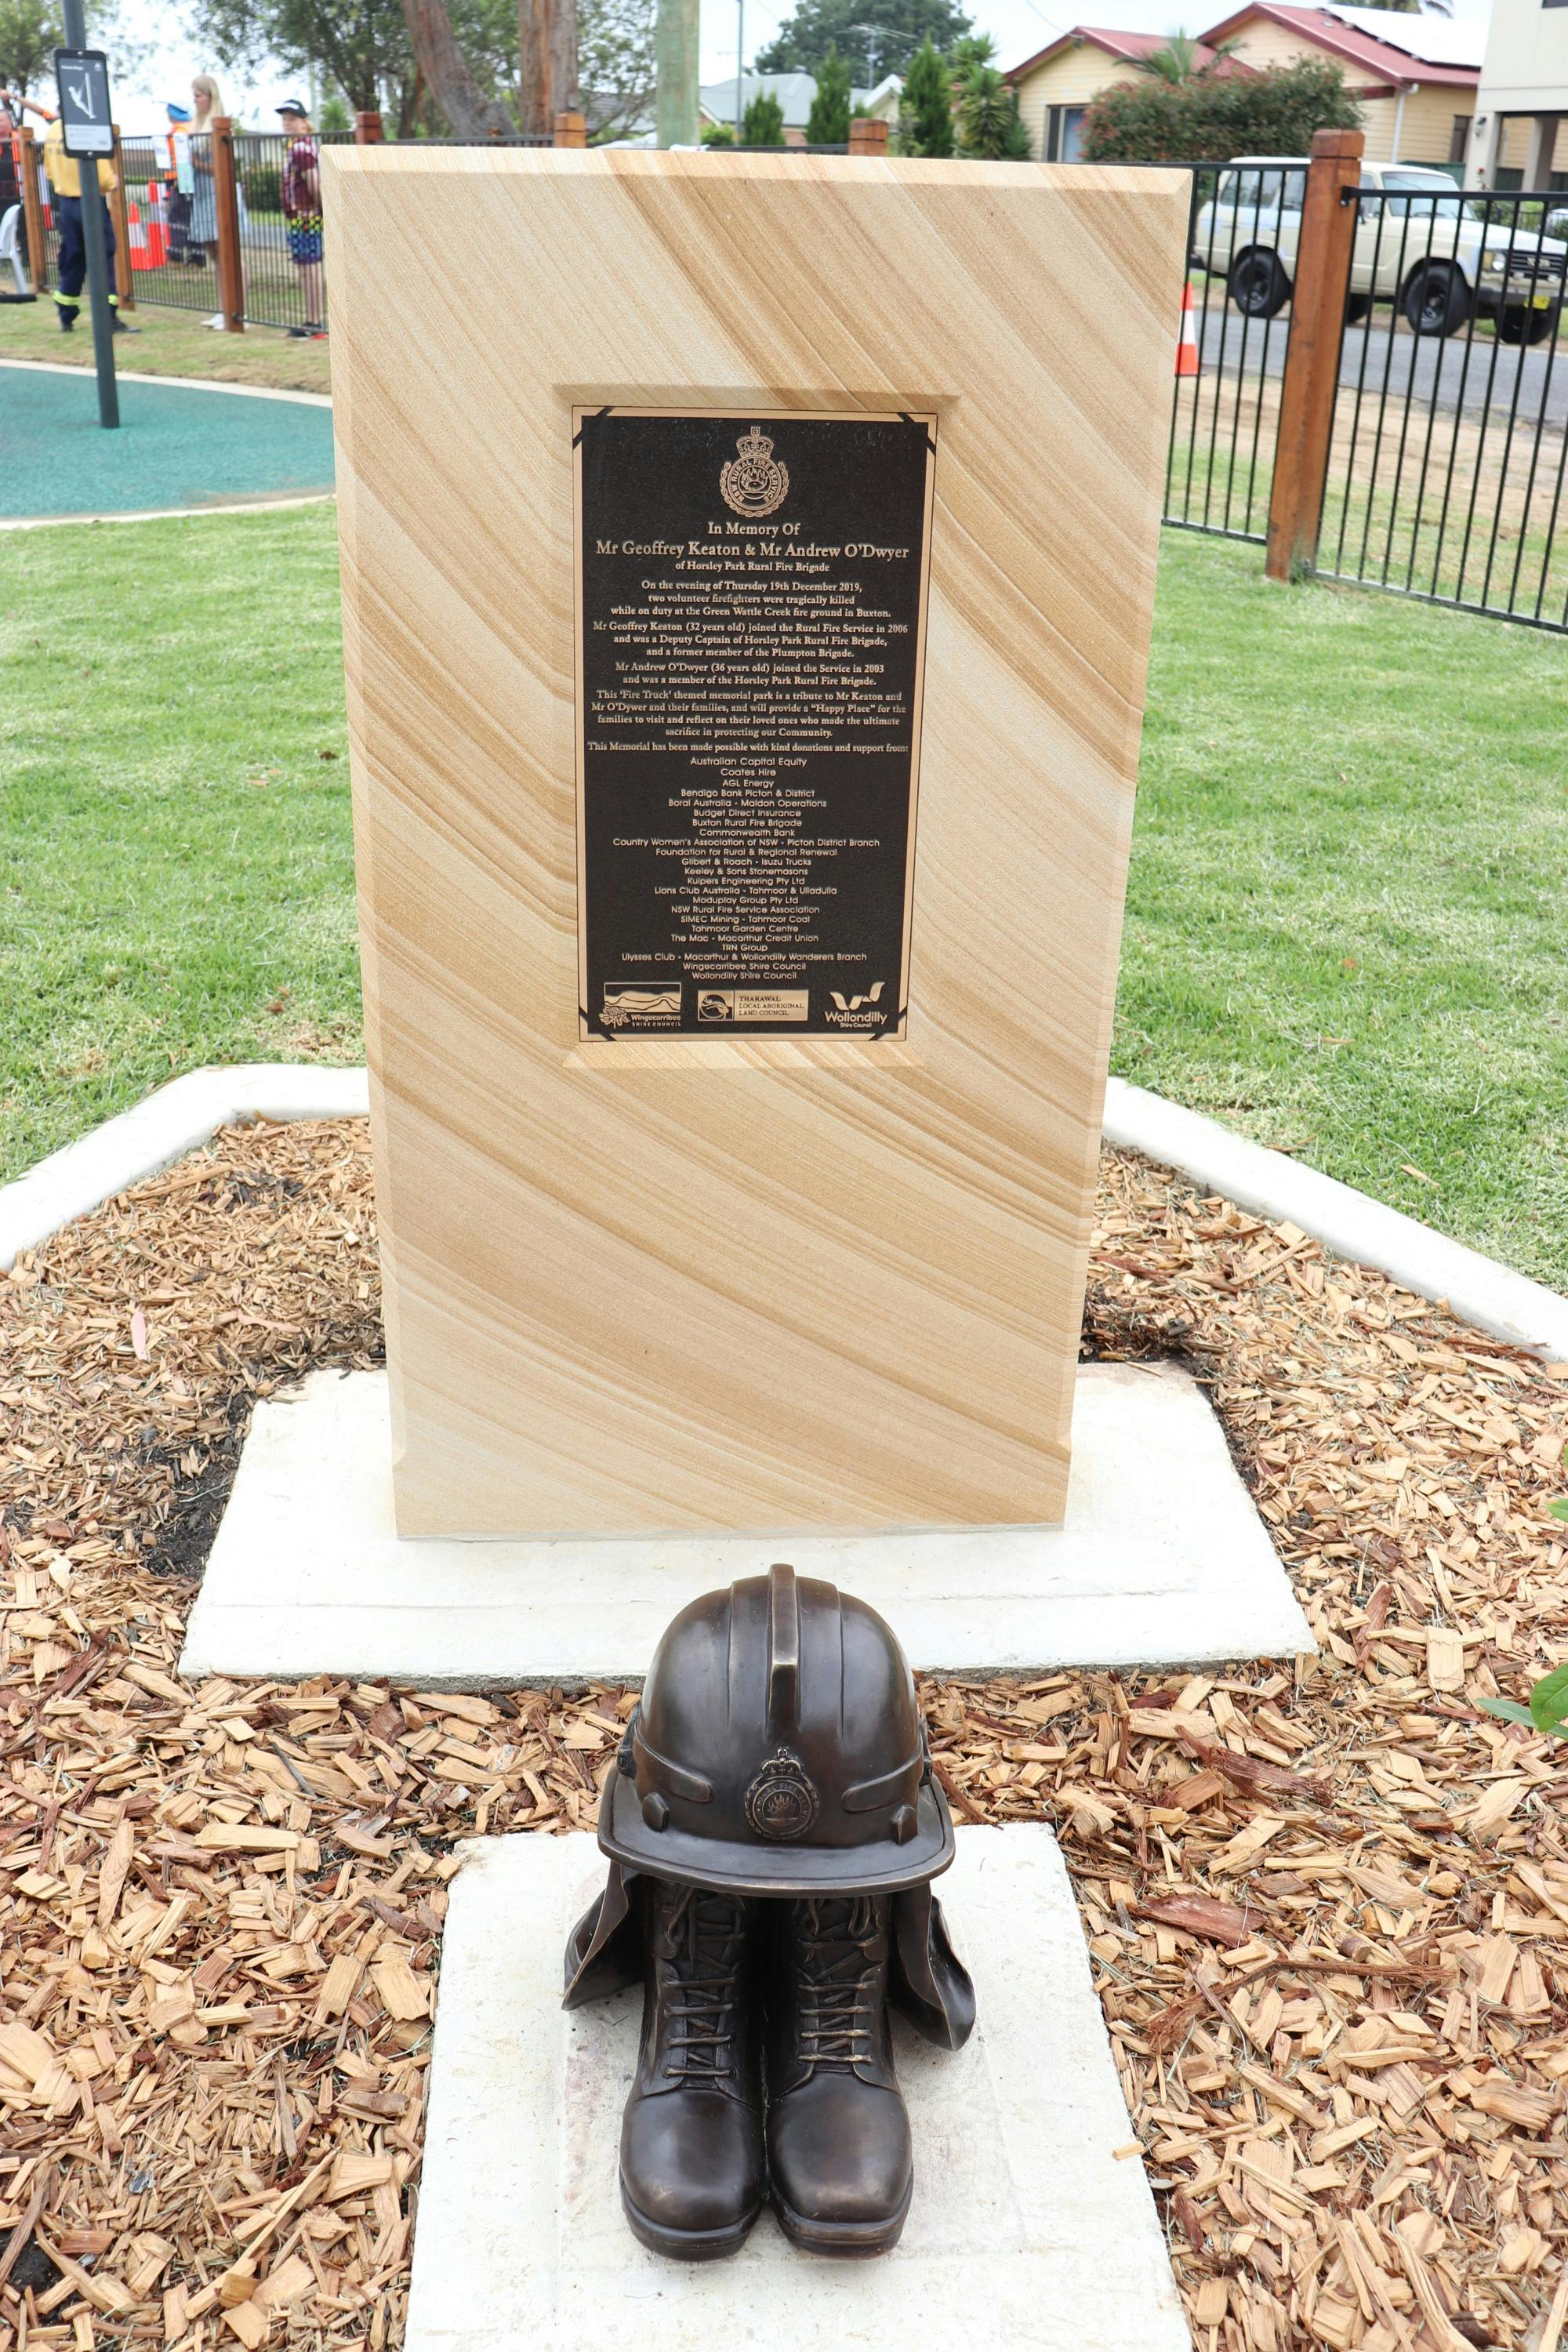 The Memorial Plaque at Telopea Park, Buxton